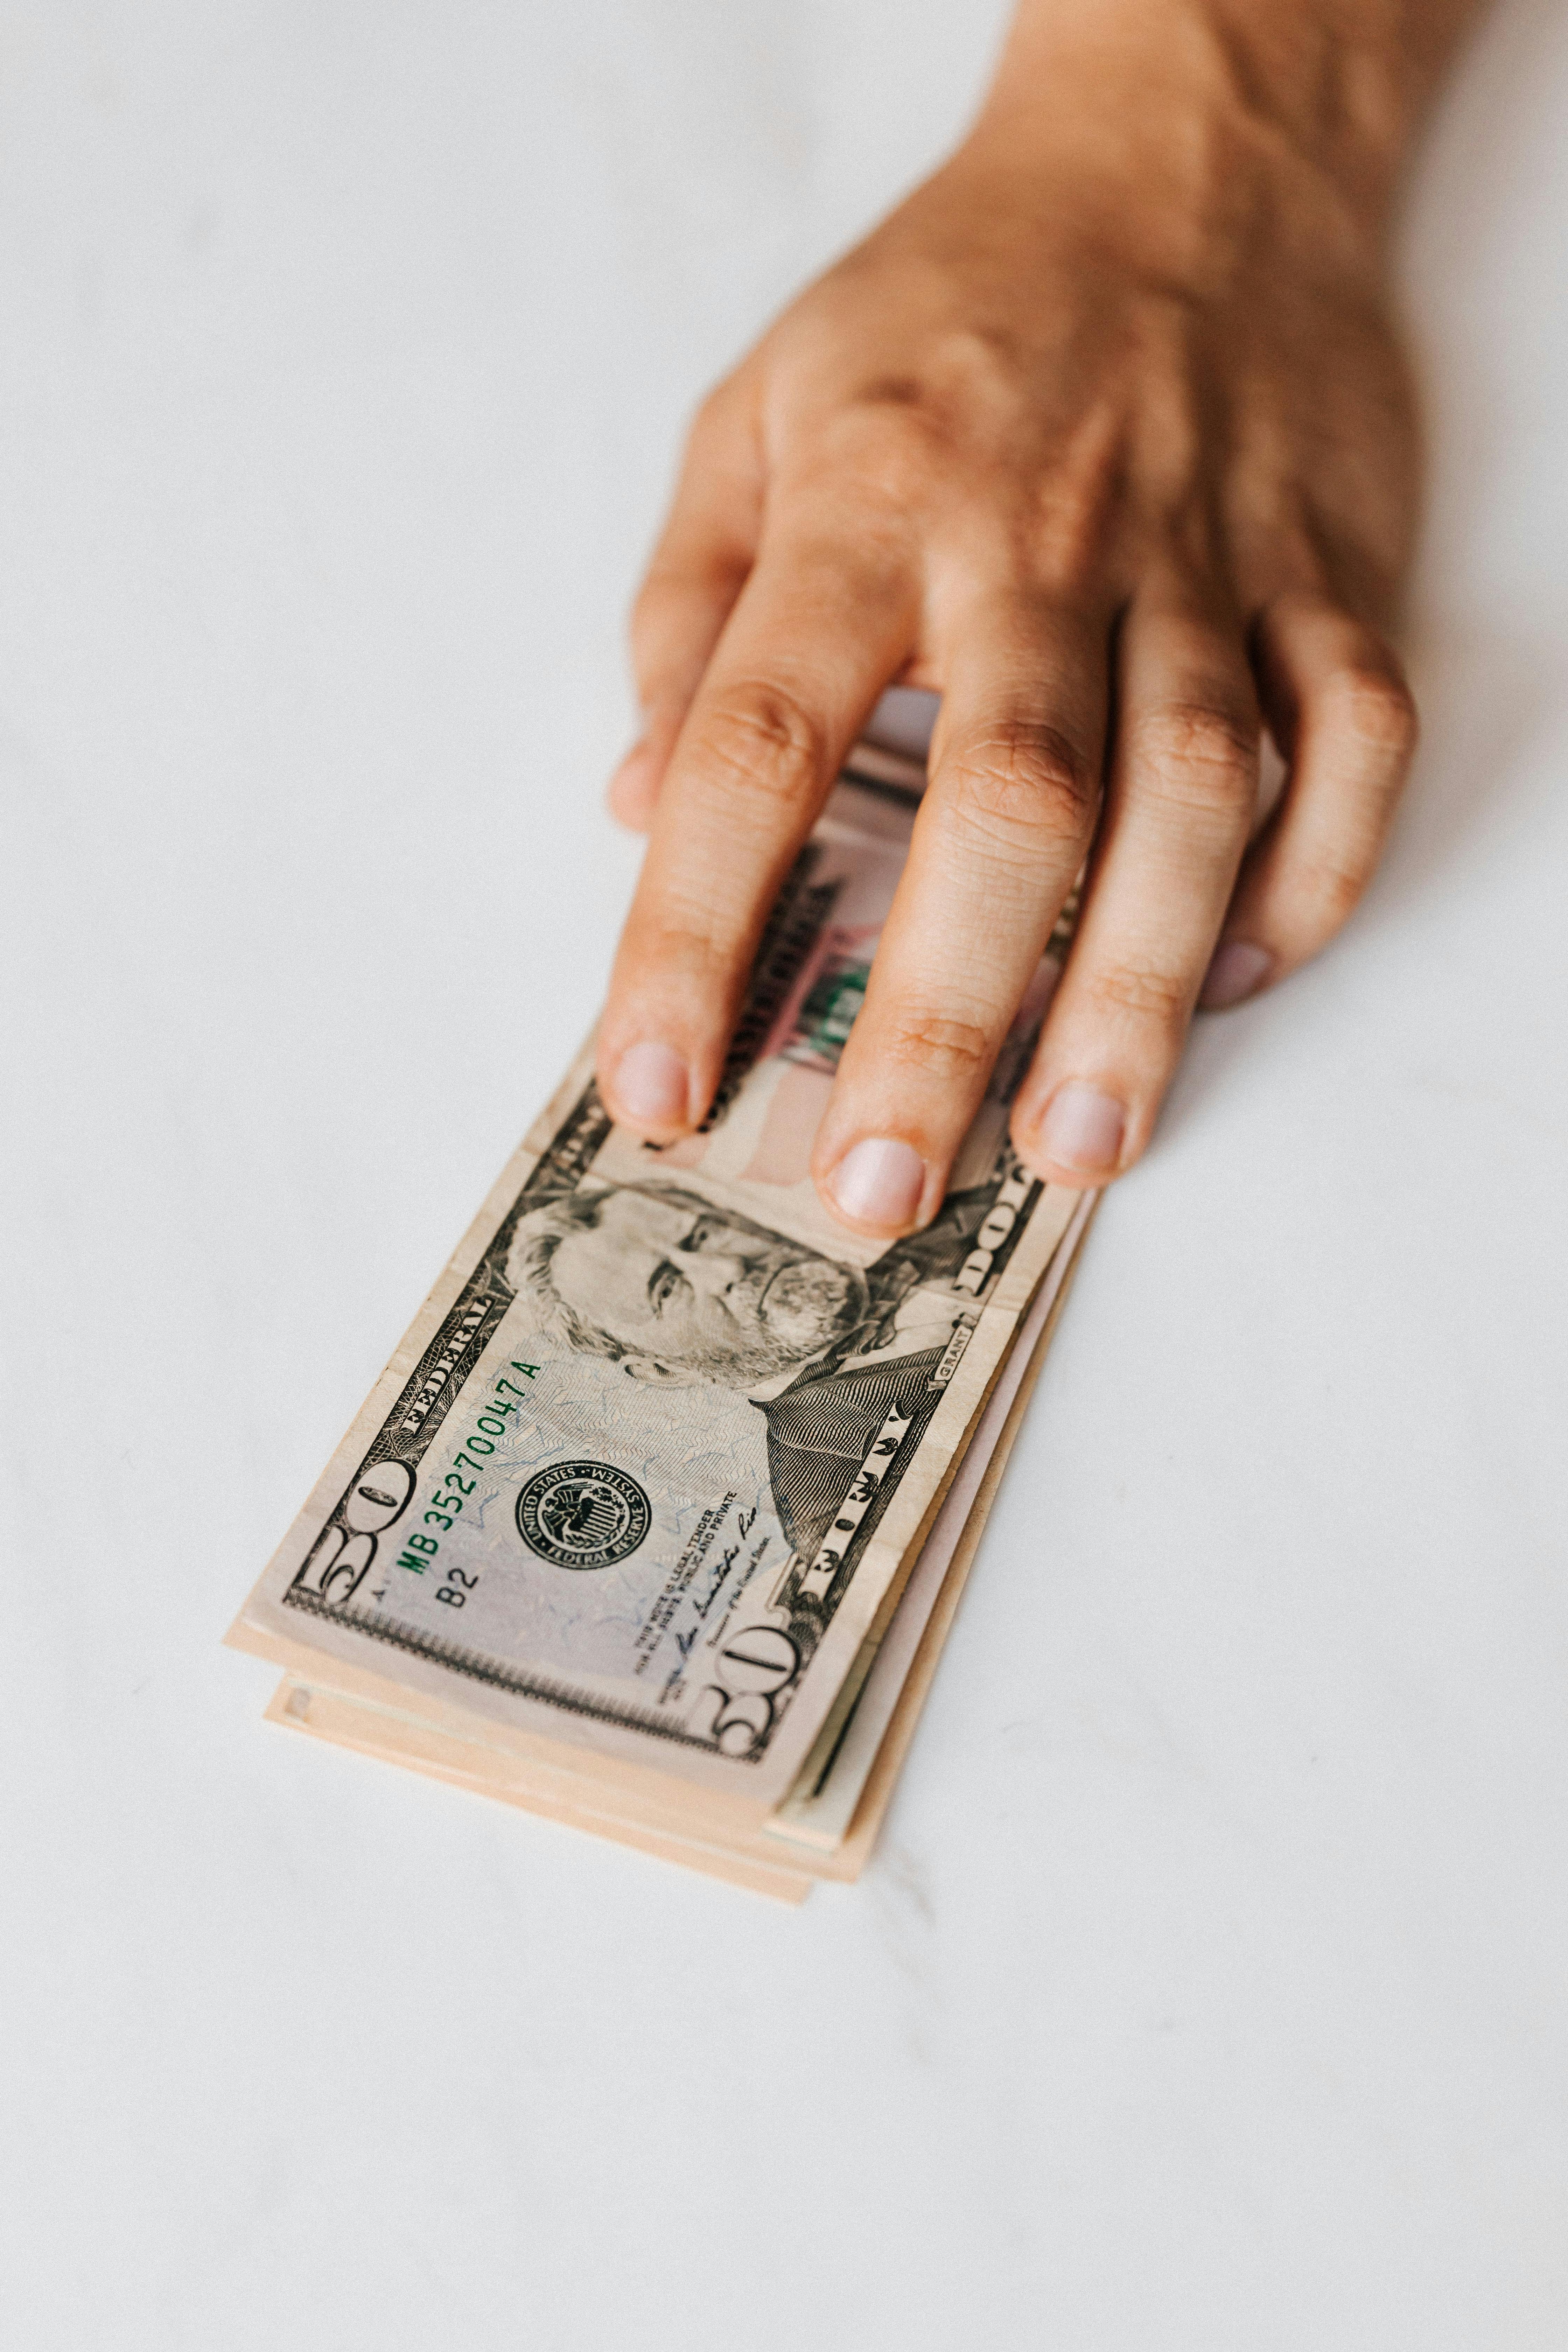 Eine Person legt einen Stapel Papiergeld auf den Tisch | Quelle: Pexels